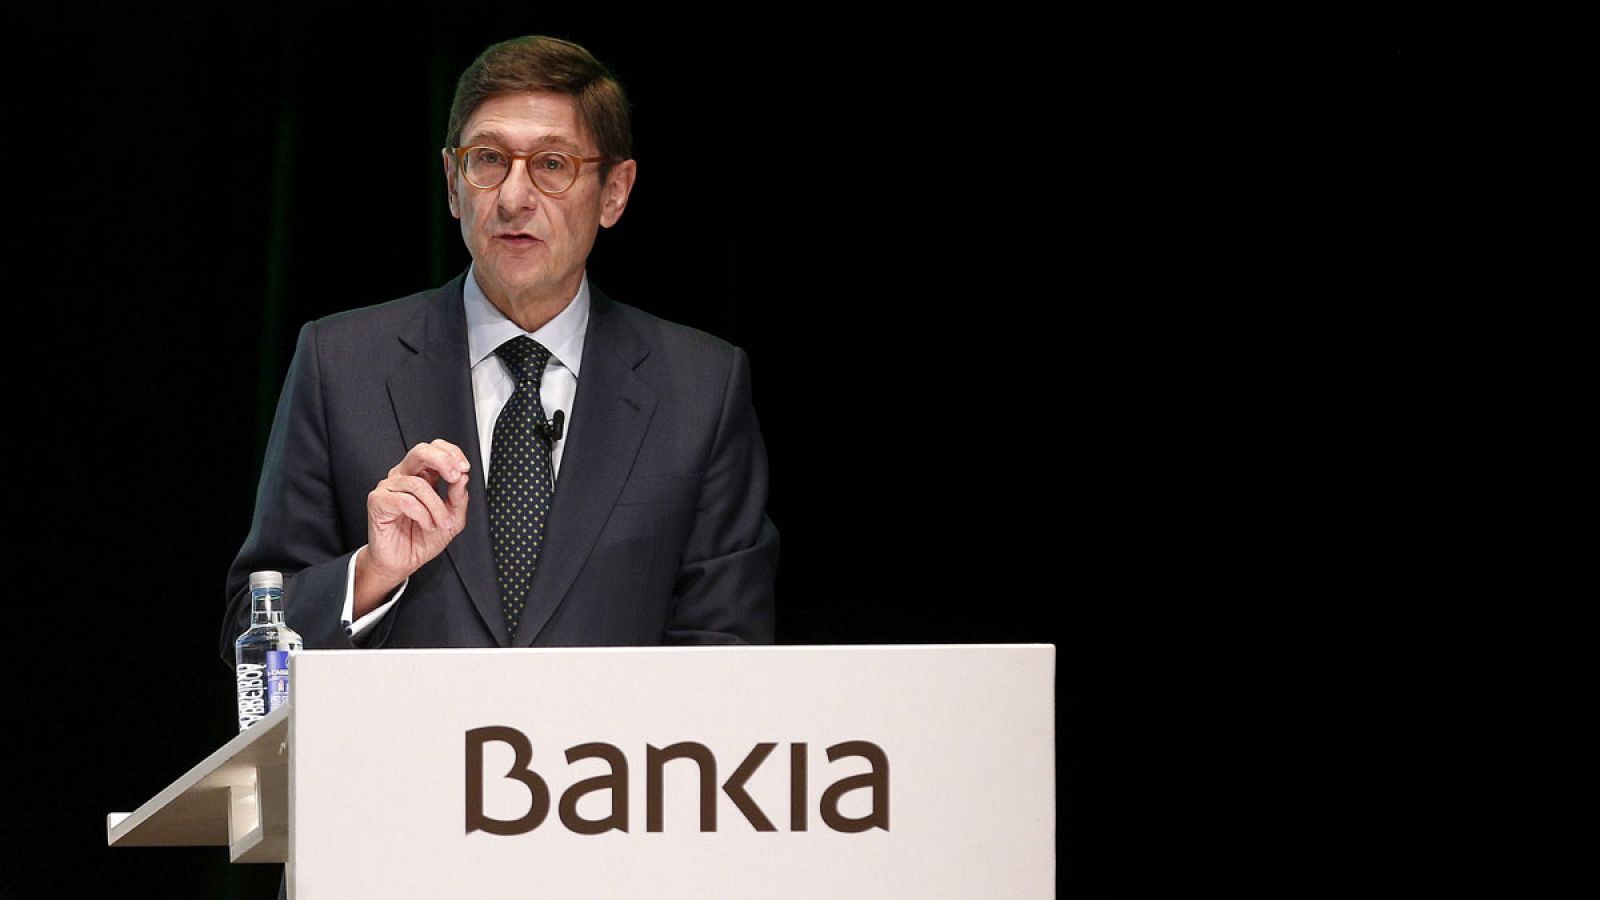 El presidente de Bankia, José Ignacio Goirigolzarri, interviene en la junta general de accionistas